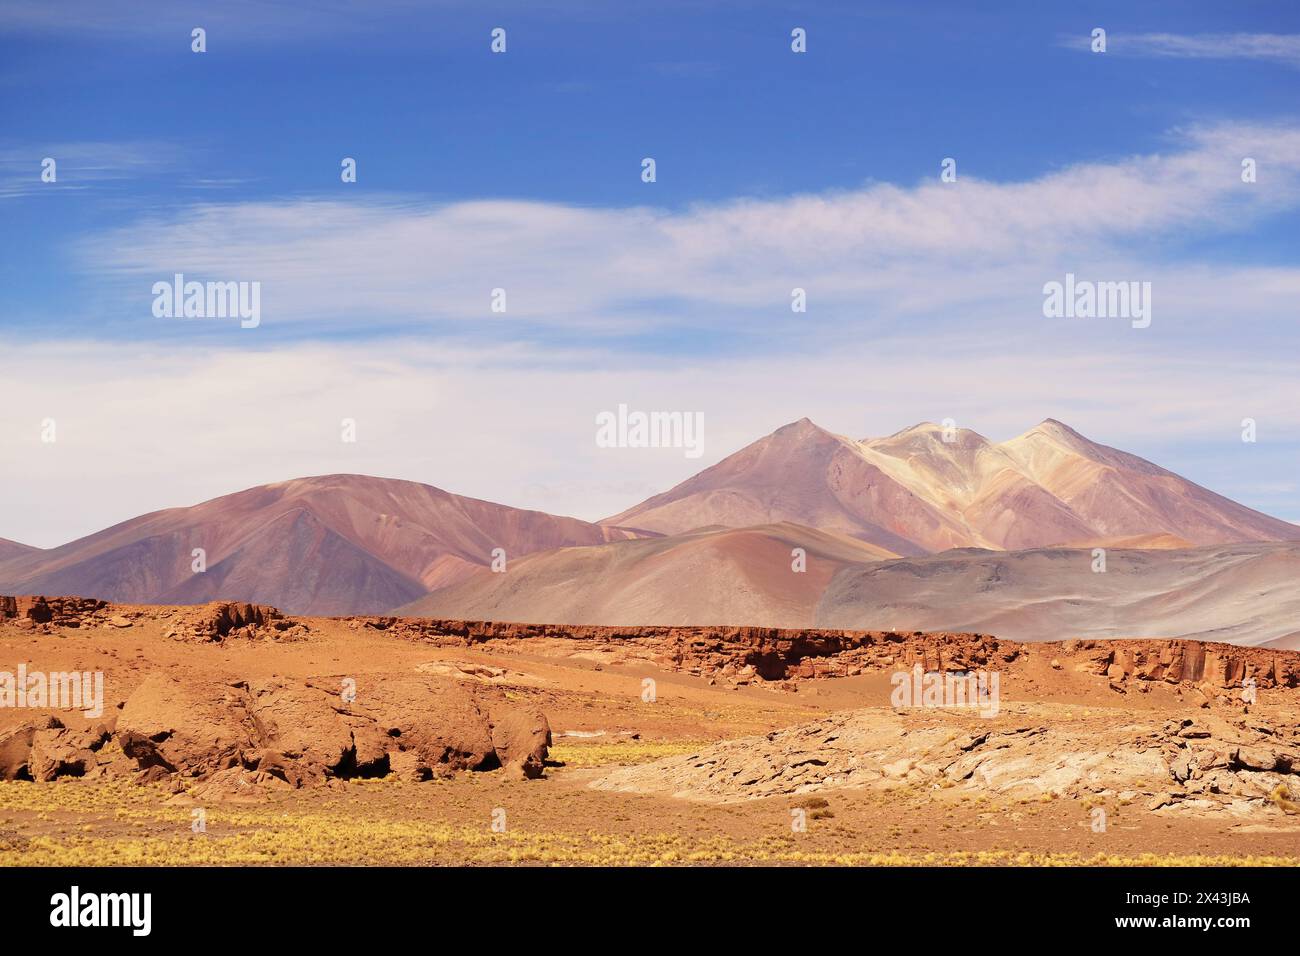 Fantastique plateau du parc national de la réserve nationale de Los Flamencos, désert d'Atacama, Altipano chilien, Chili, Amérique du Sud Banque D'Images